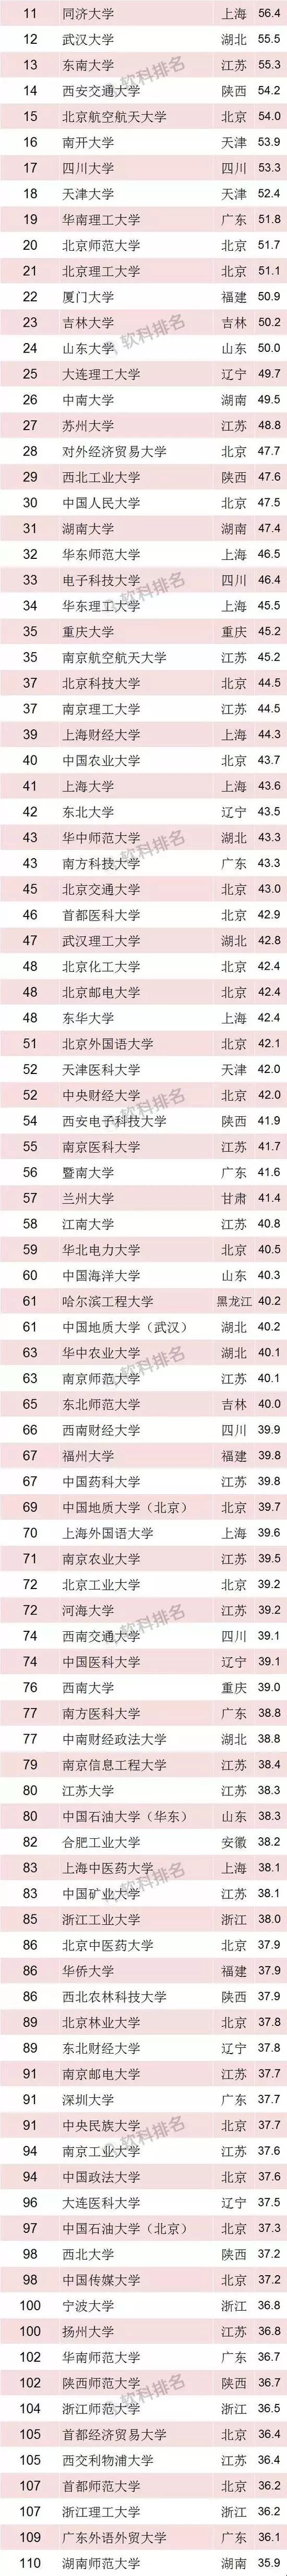 20193年大学排行榜_2014中国大学100强厦大排第19 被冠予五星级大学